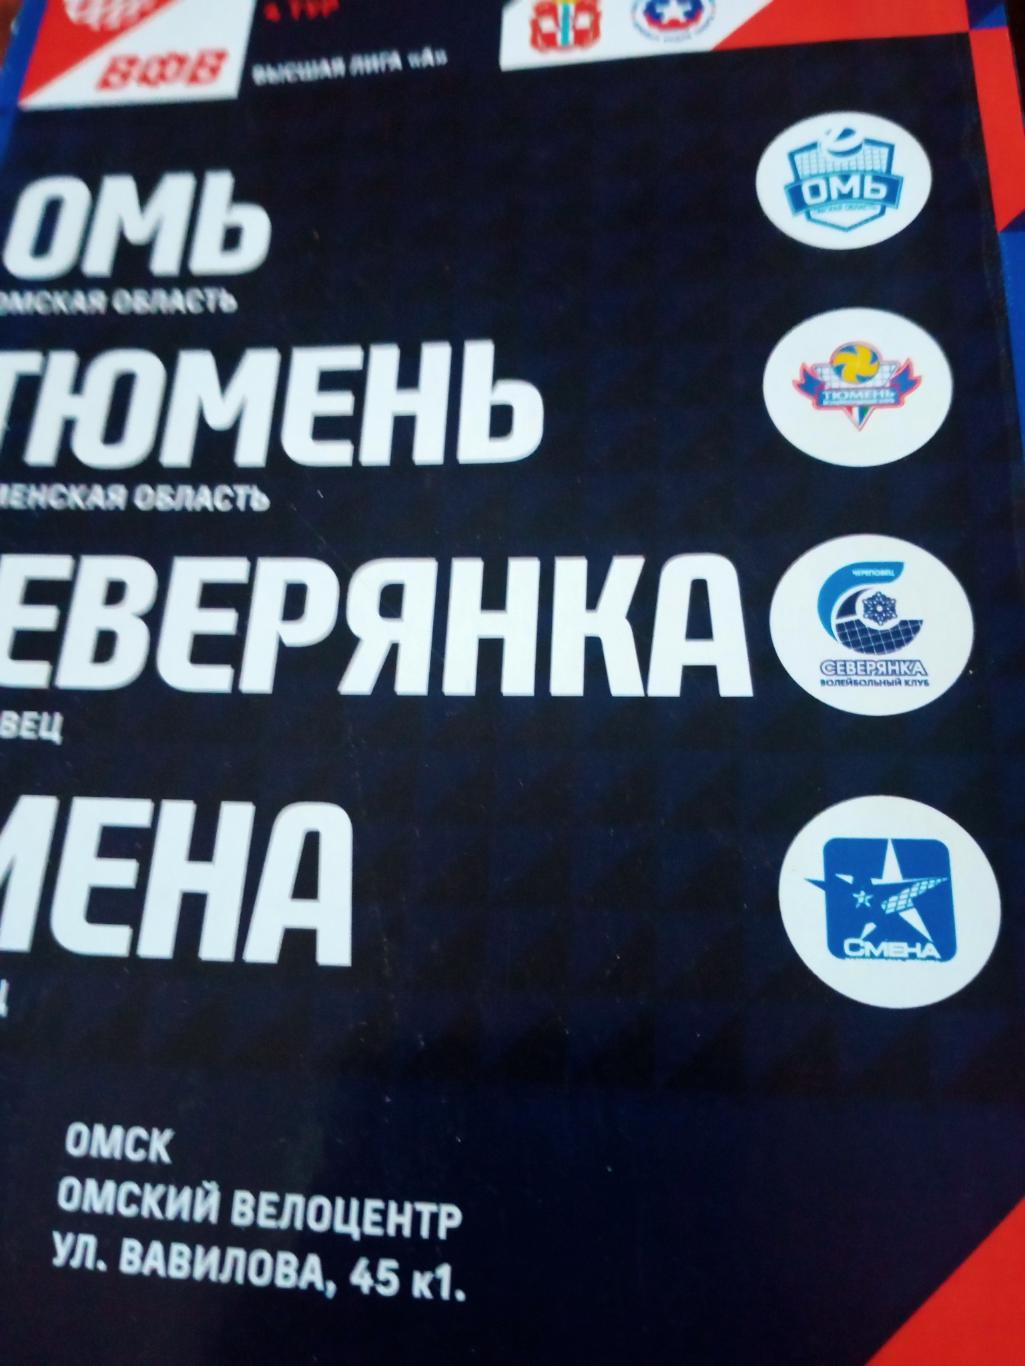 Высшая лига А. 11 - 14 ноября 2022 год. Тур в Омске